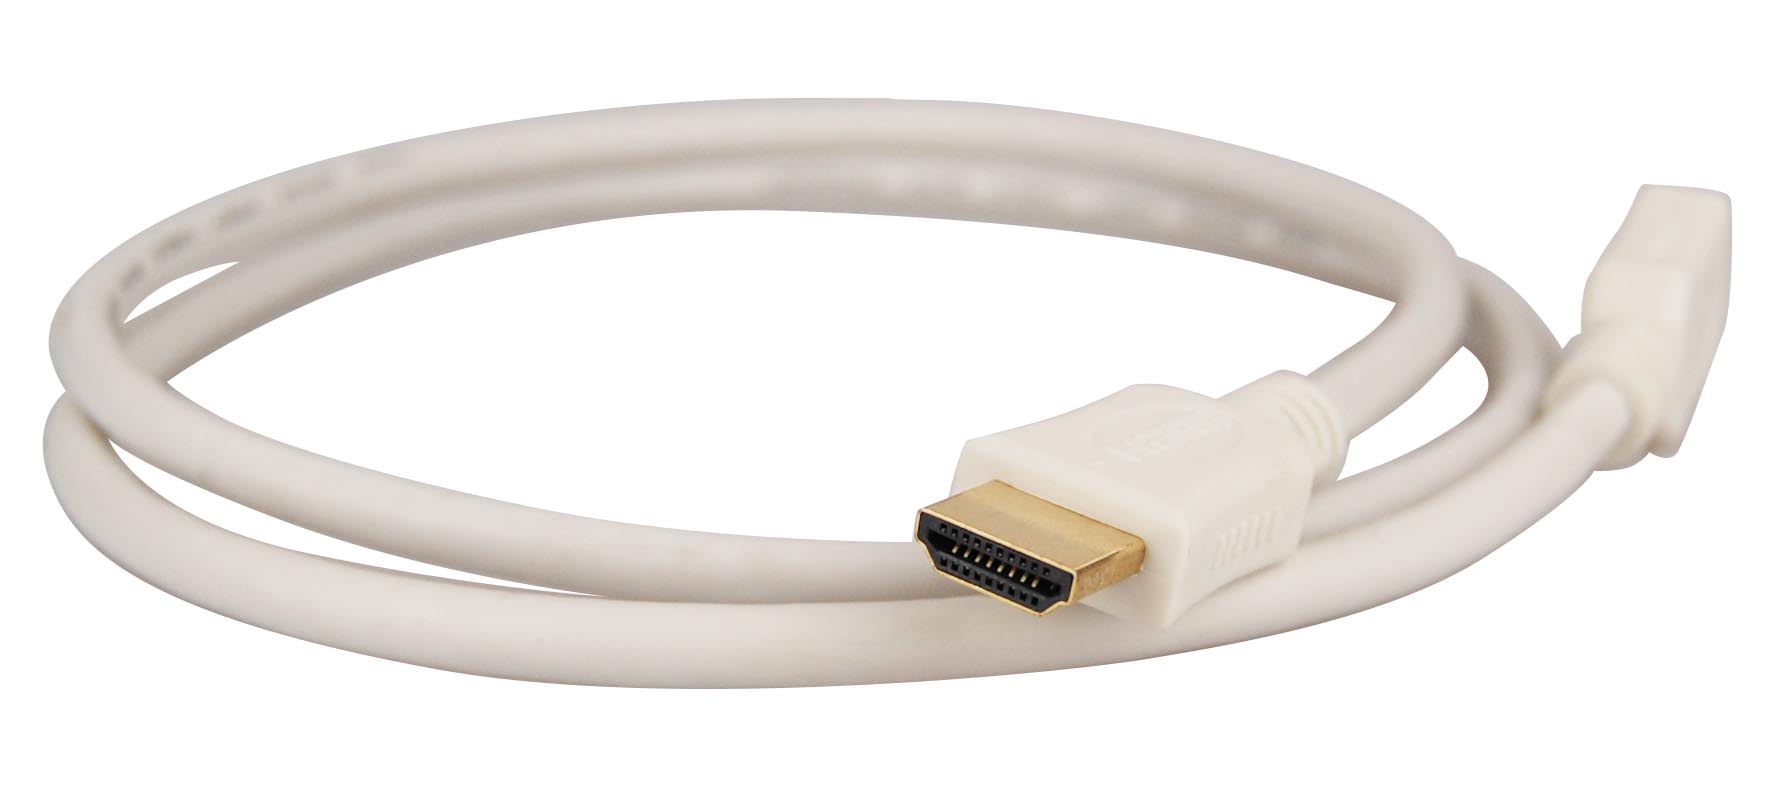 Günstiges HDMI-Kabel mit 1.4. Spezifikation.